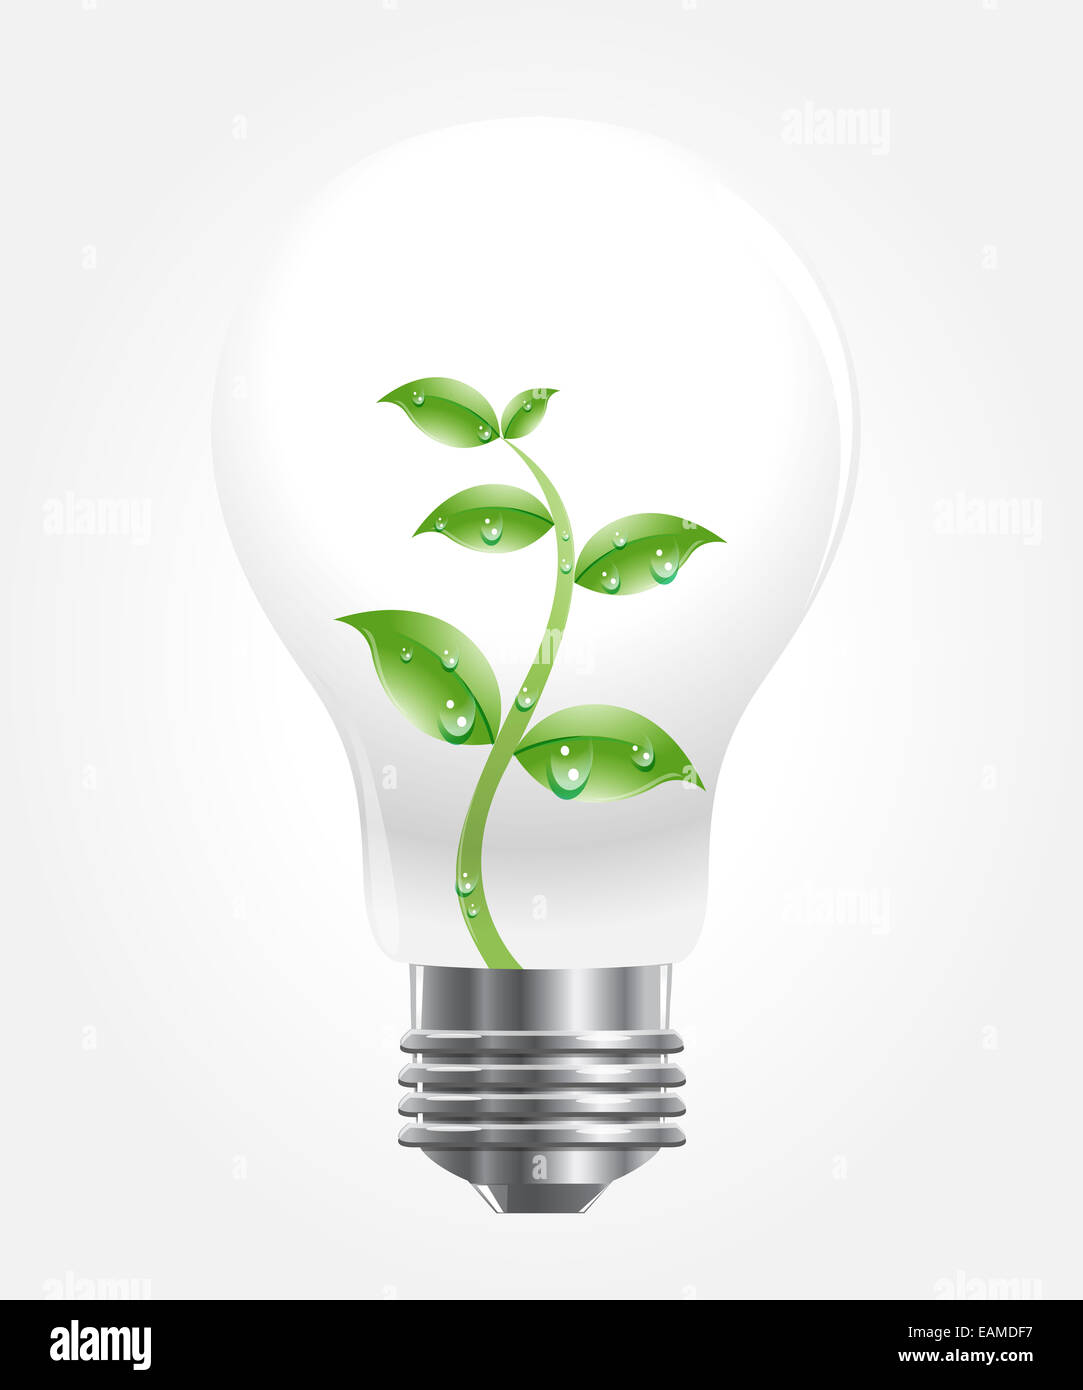 Bombilla de luz con la planta que crece en su interior, ilustración vectorial Foto de stock